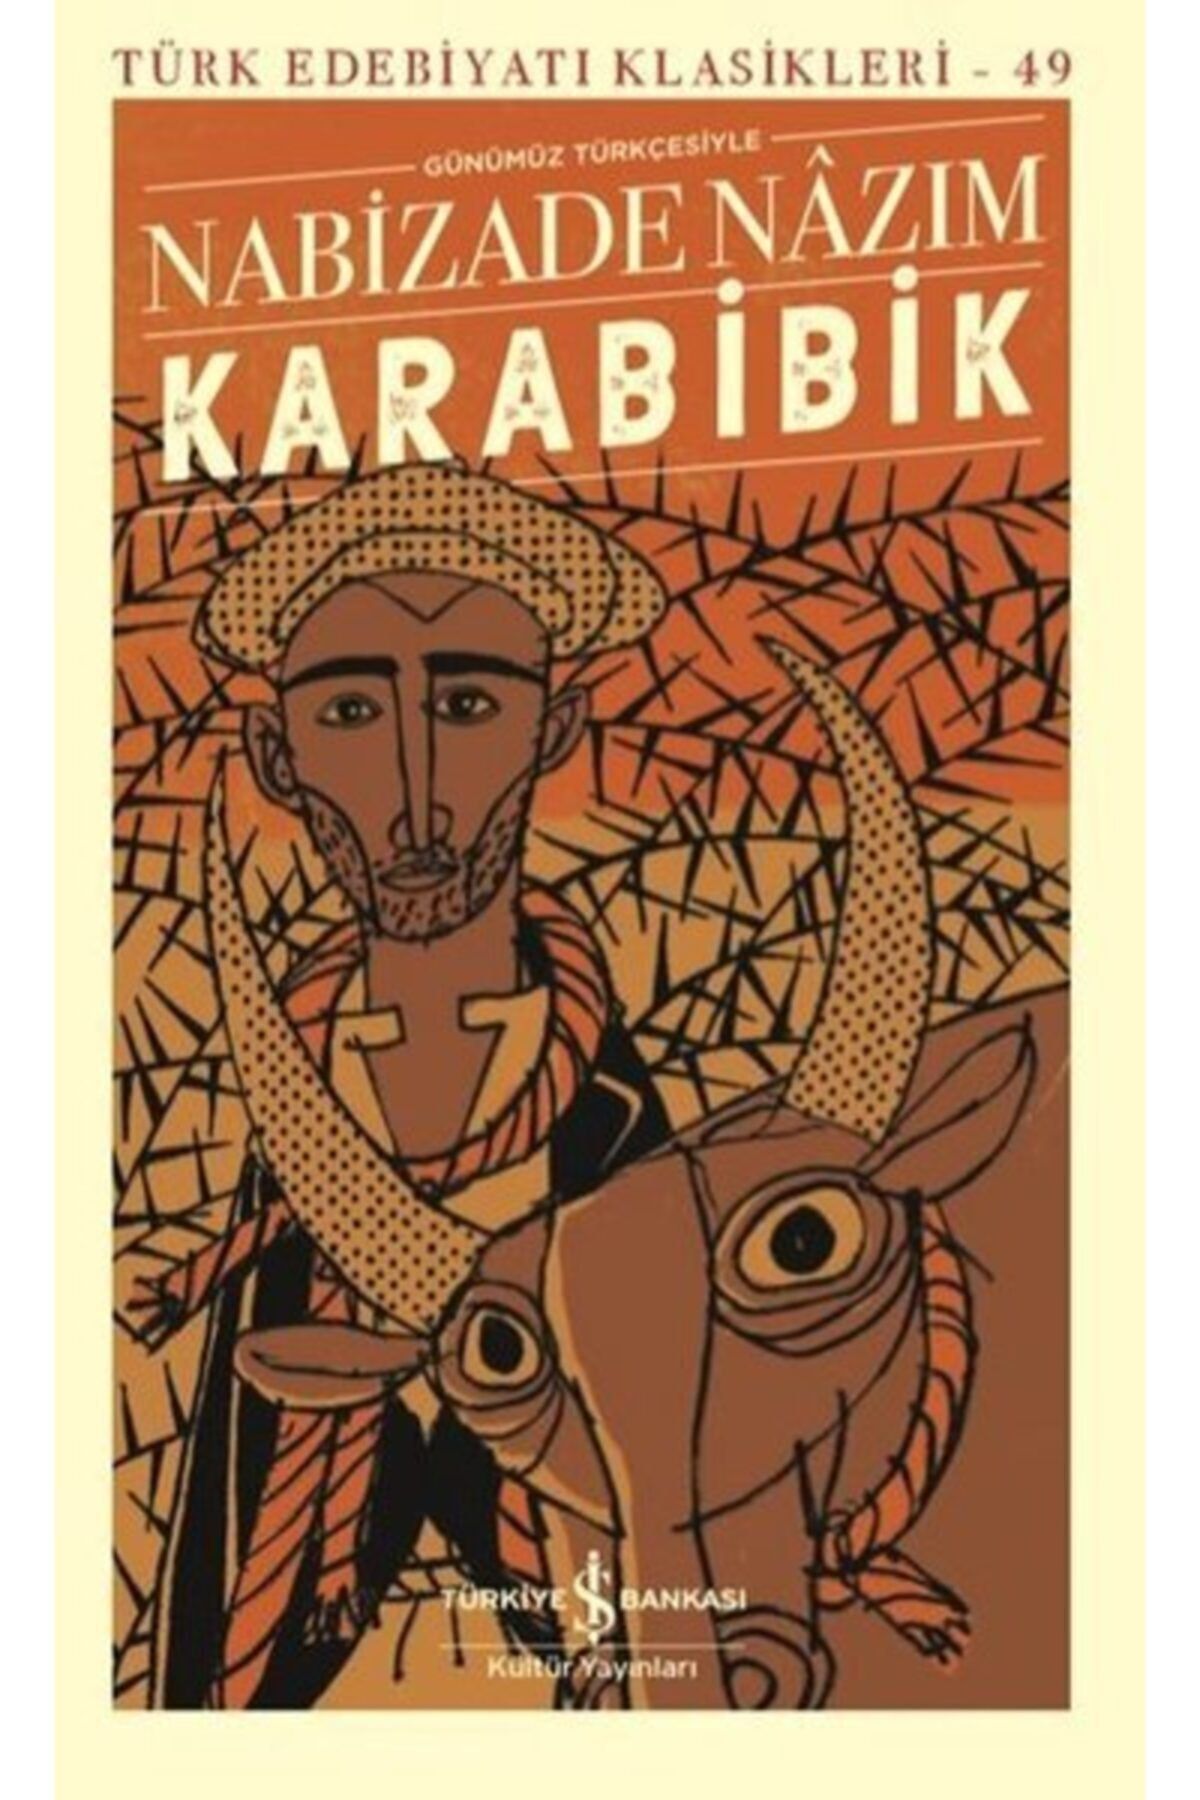 Türkiye İş Bankası Kültür Yayınları (Kitap) Karabibik - Türk Edebiyatı Klasikleri (Şömizli)